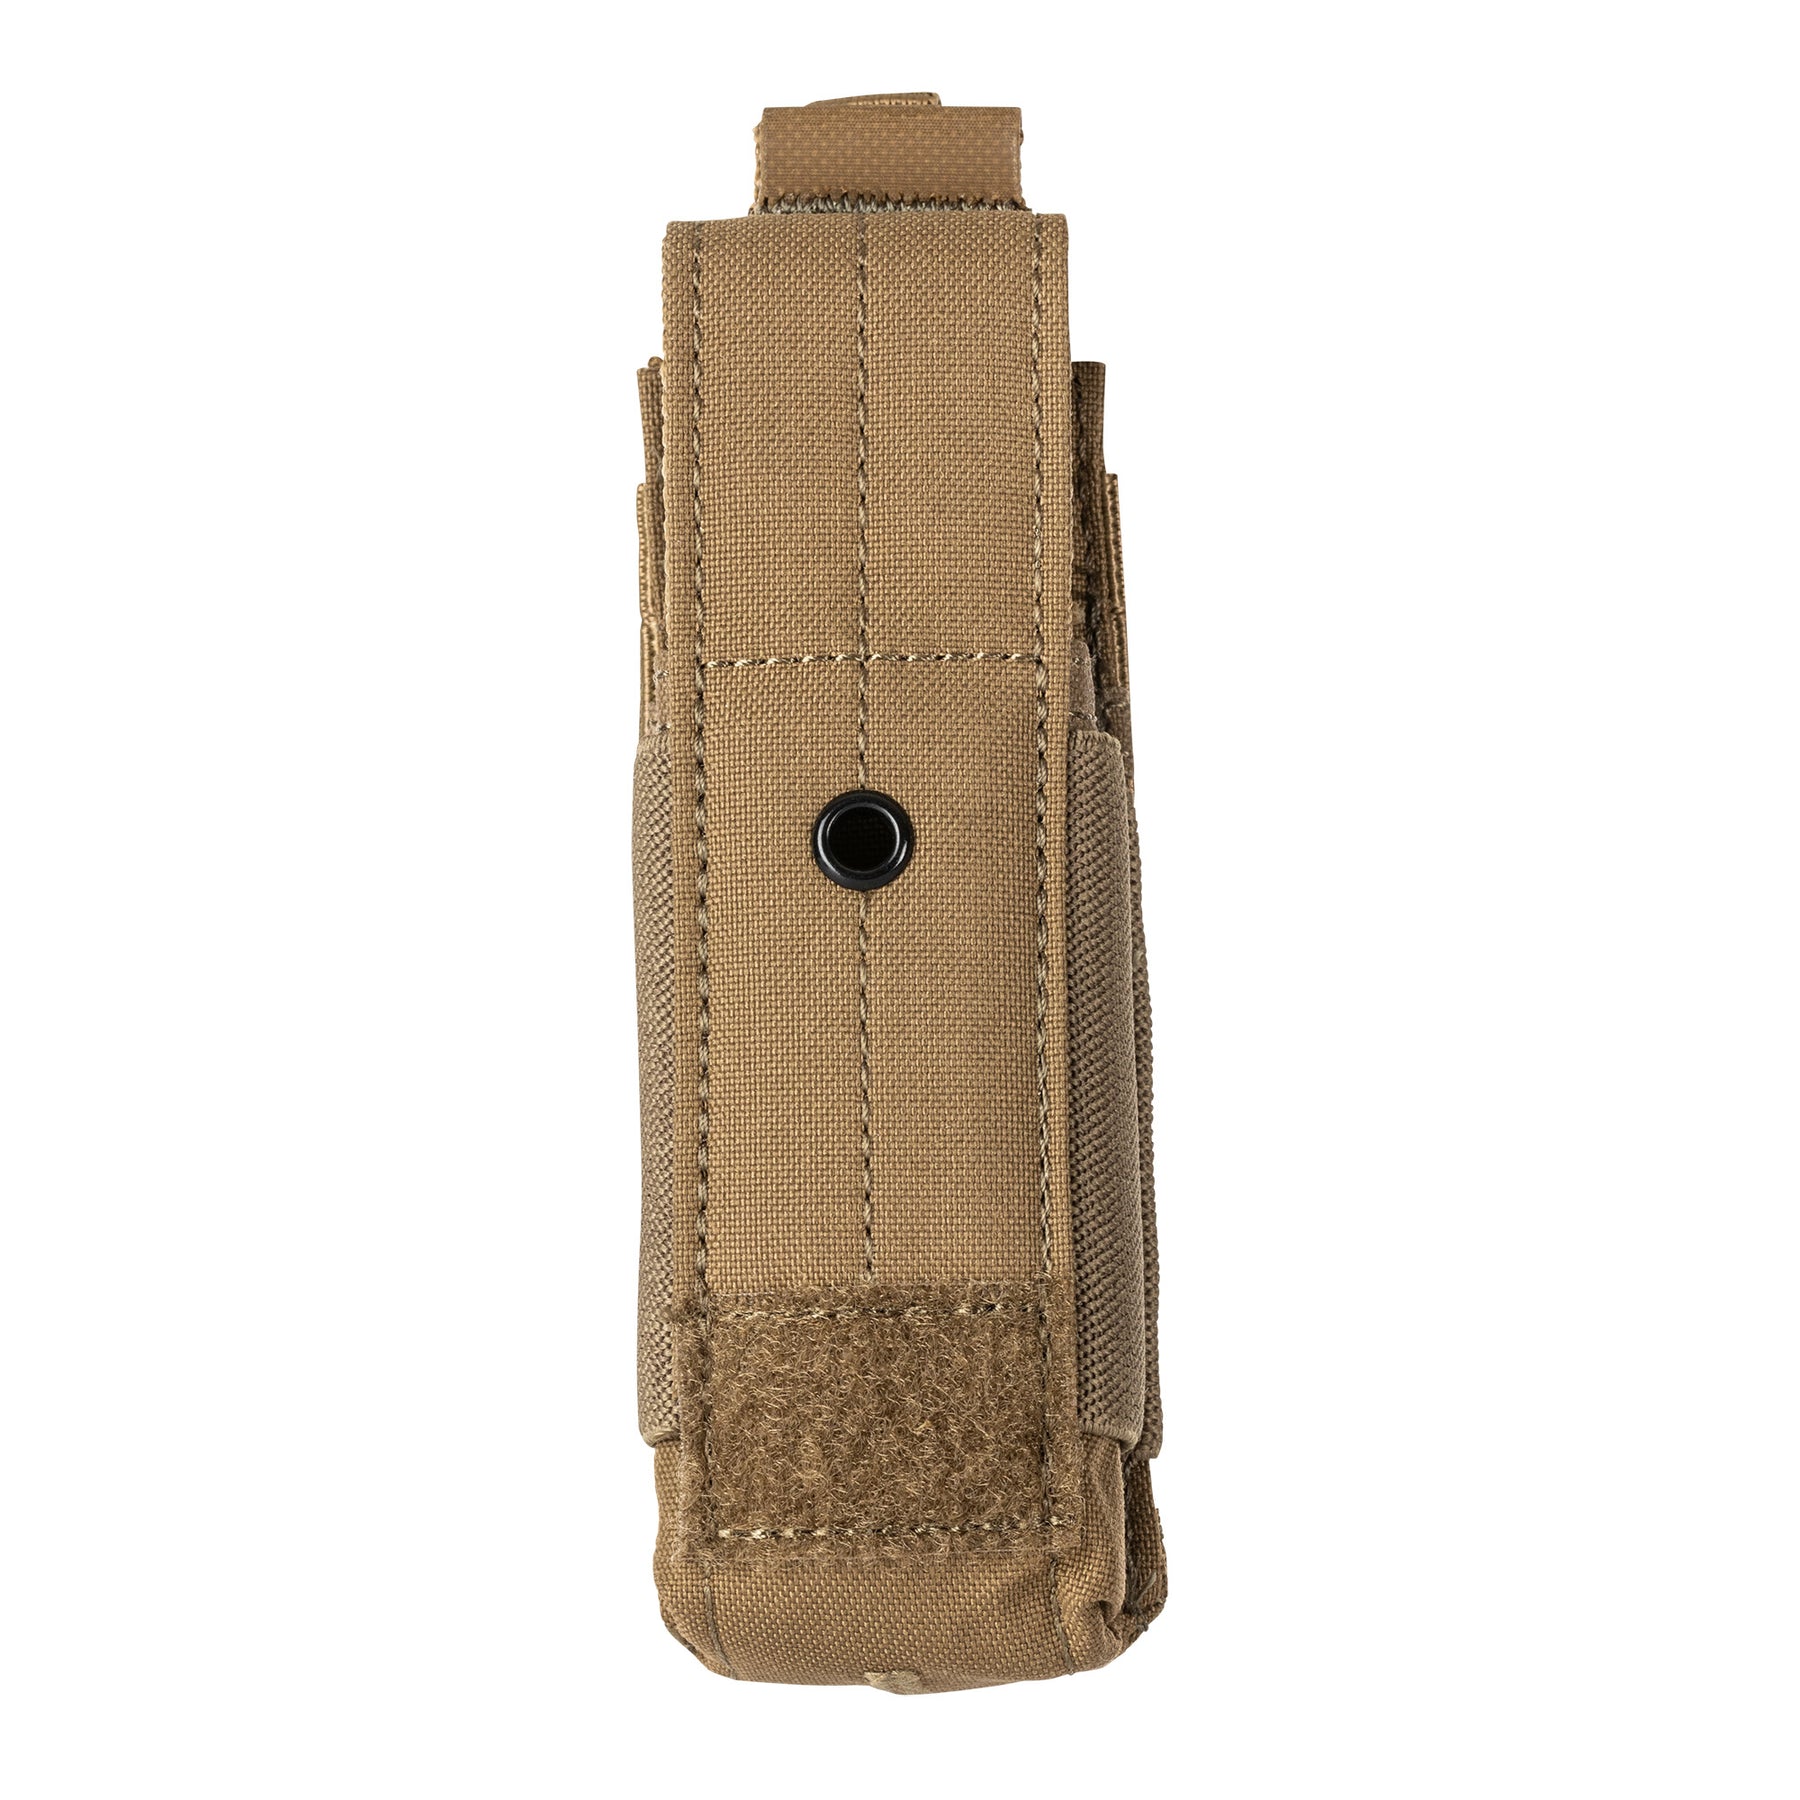 5.11 |  FLEX SINGLE PISTOL MAG COVER POUCH - Tasca porta caricatore per pistola